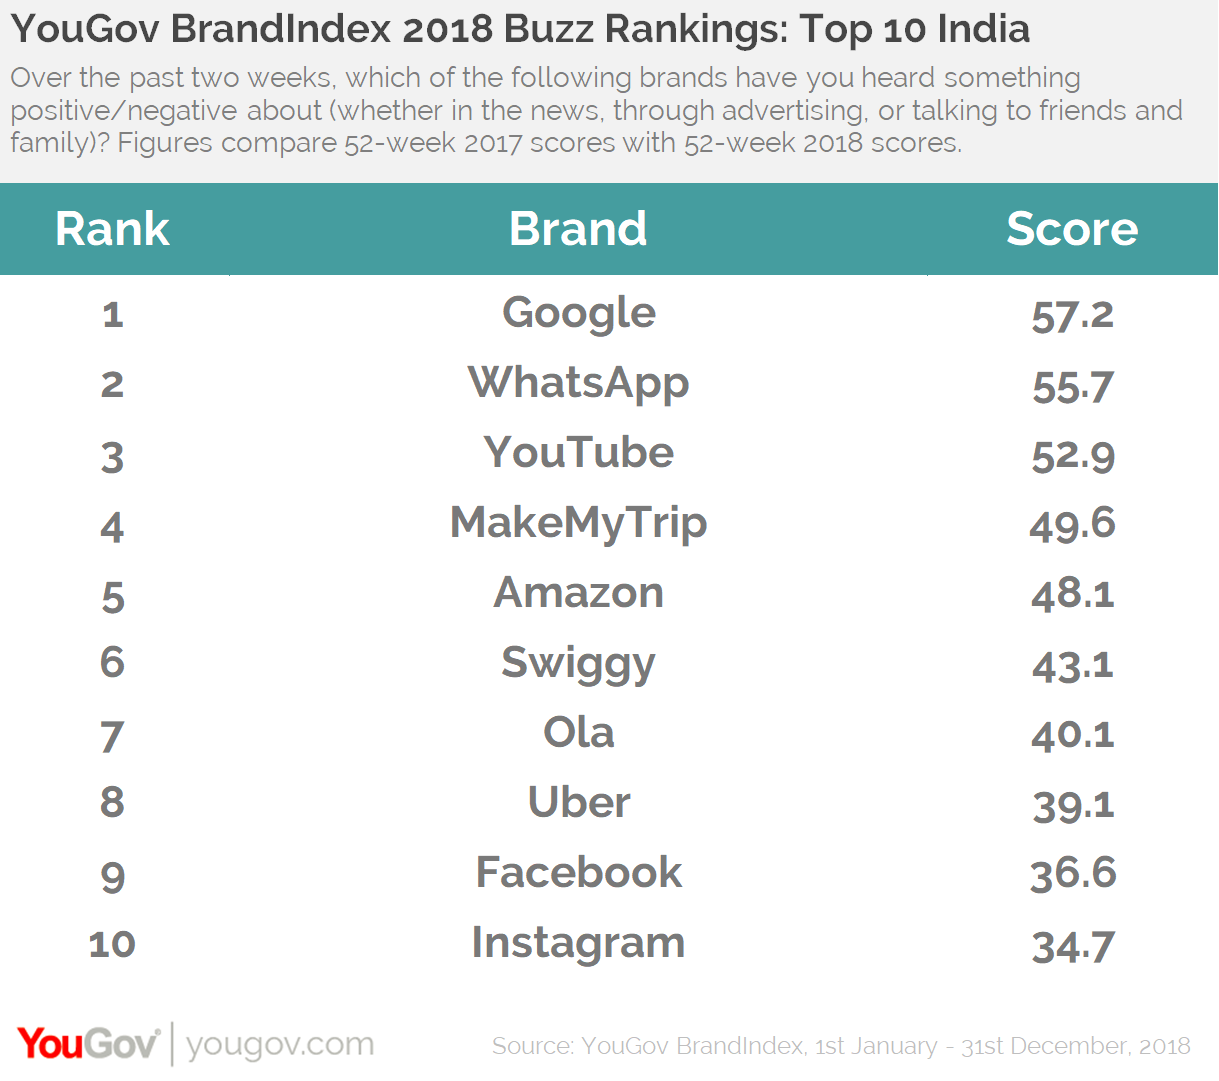 YouGov BrandIndex Buzz Rankings 2018- Top 10 India